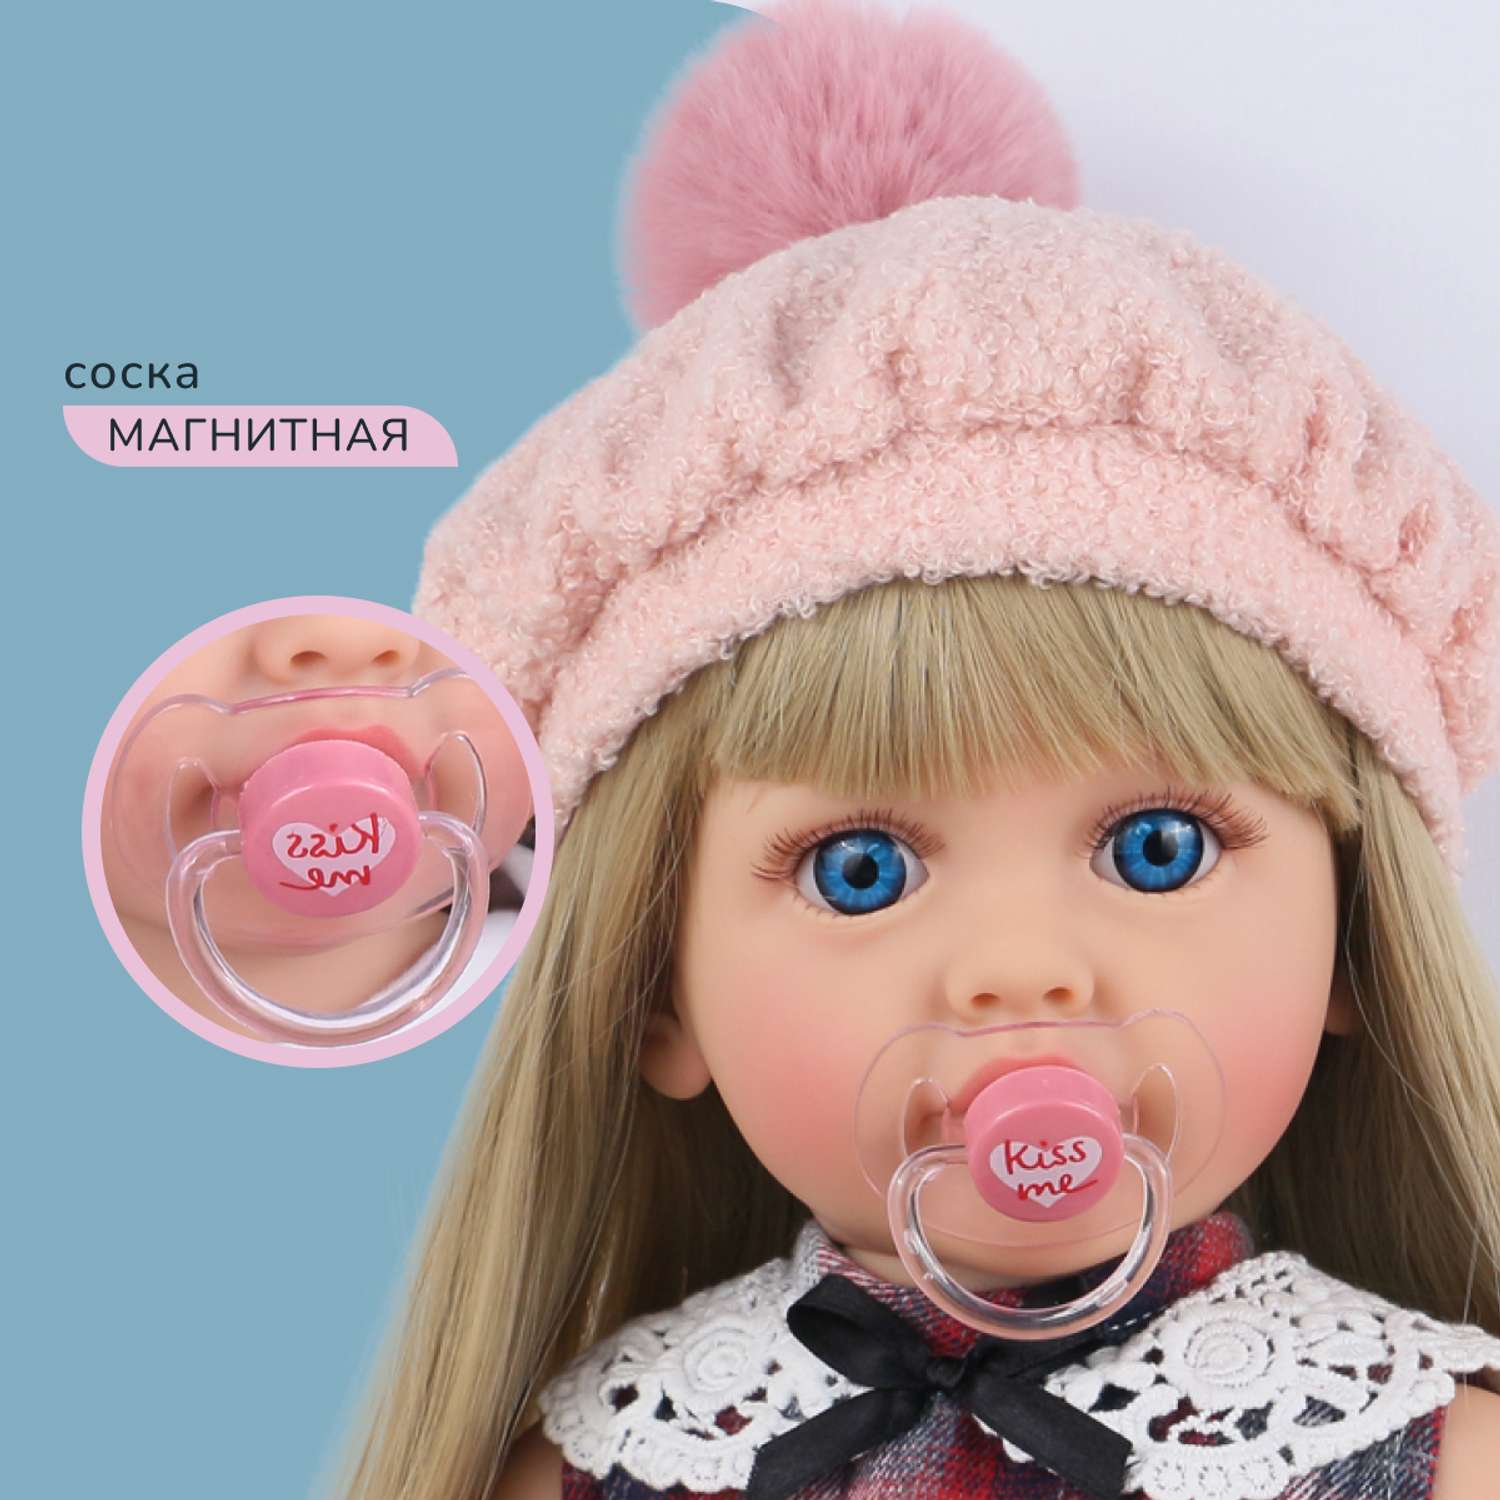 Кукла Реборн QA BABY Марианна большая пупс набор игрушки для девочки 55 см 5553 - фото 6